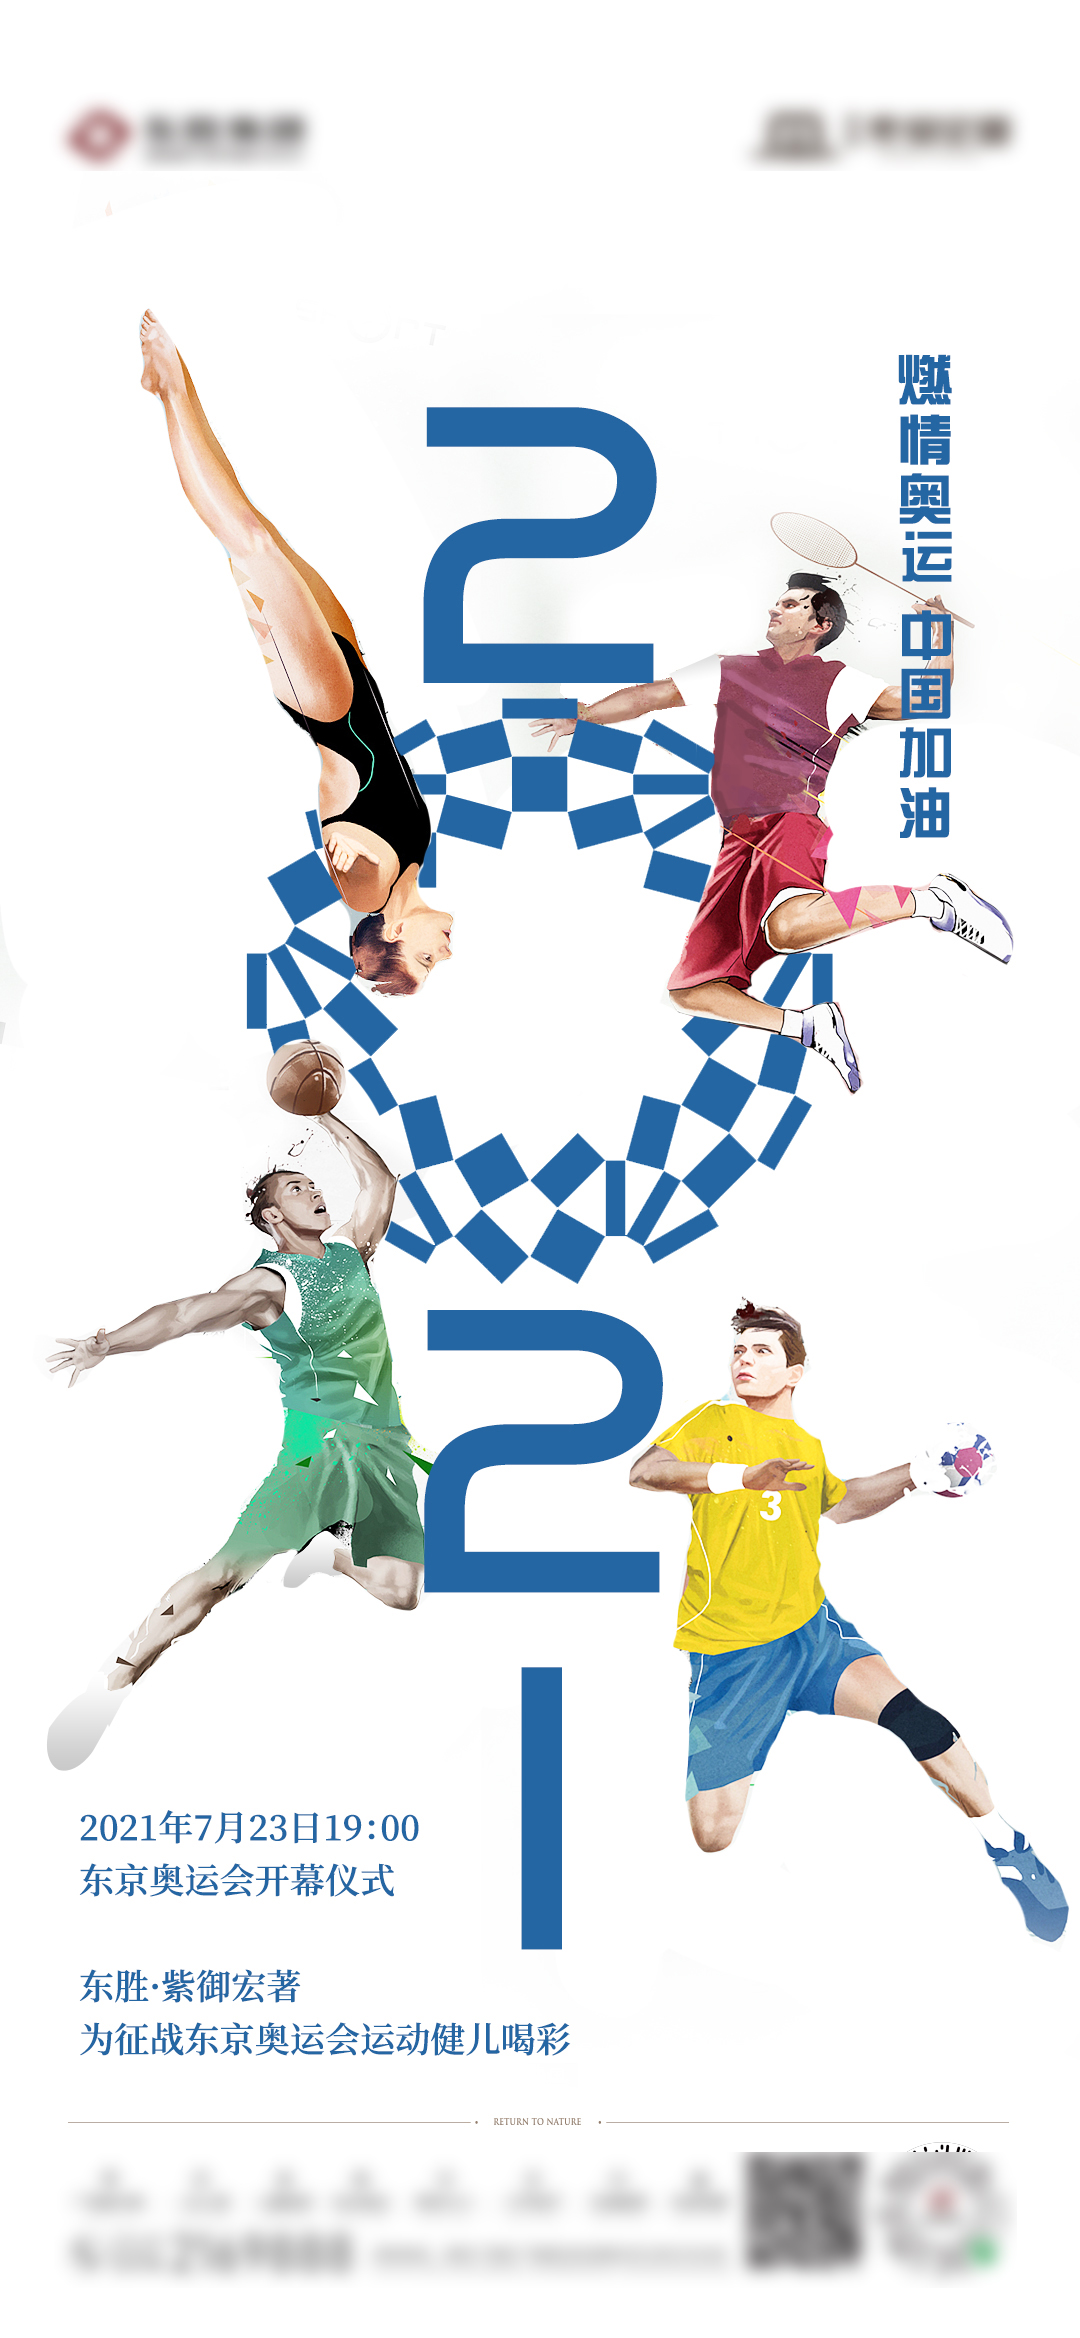 奥运psd广告设计素材海报模板免费下载